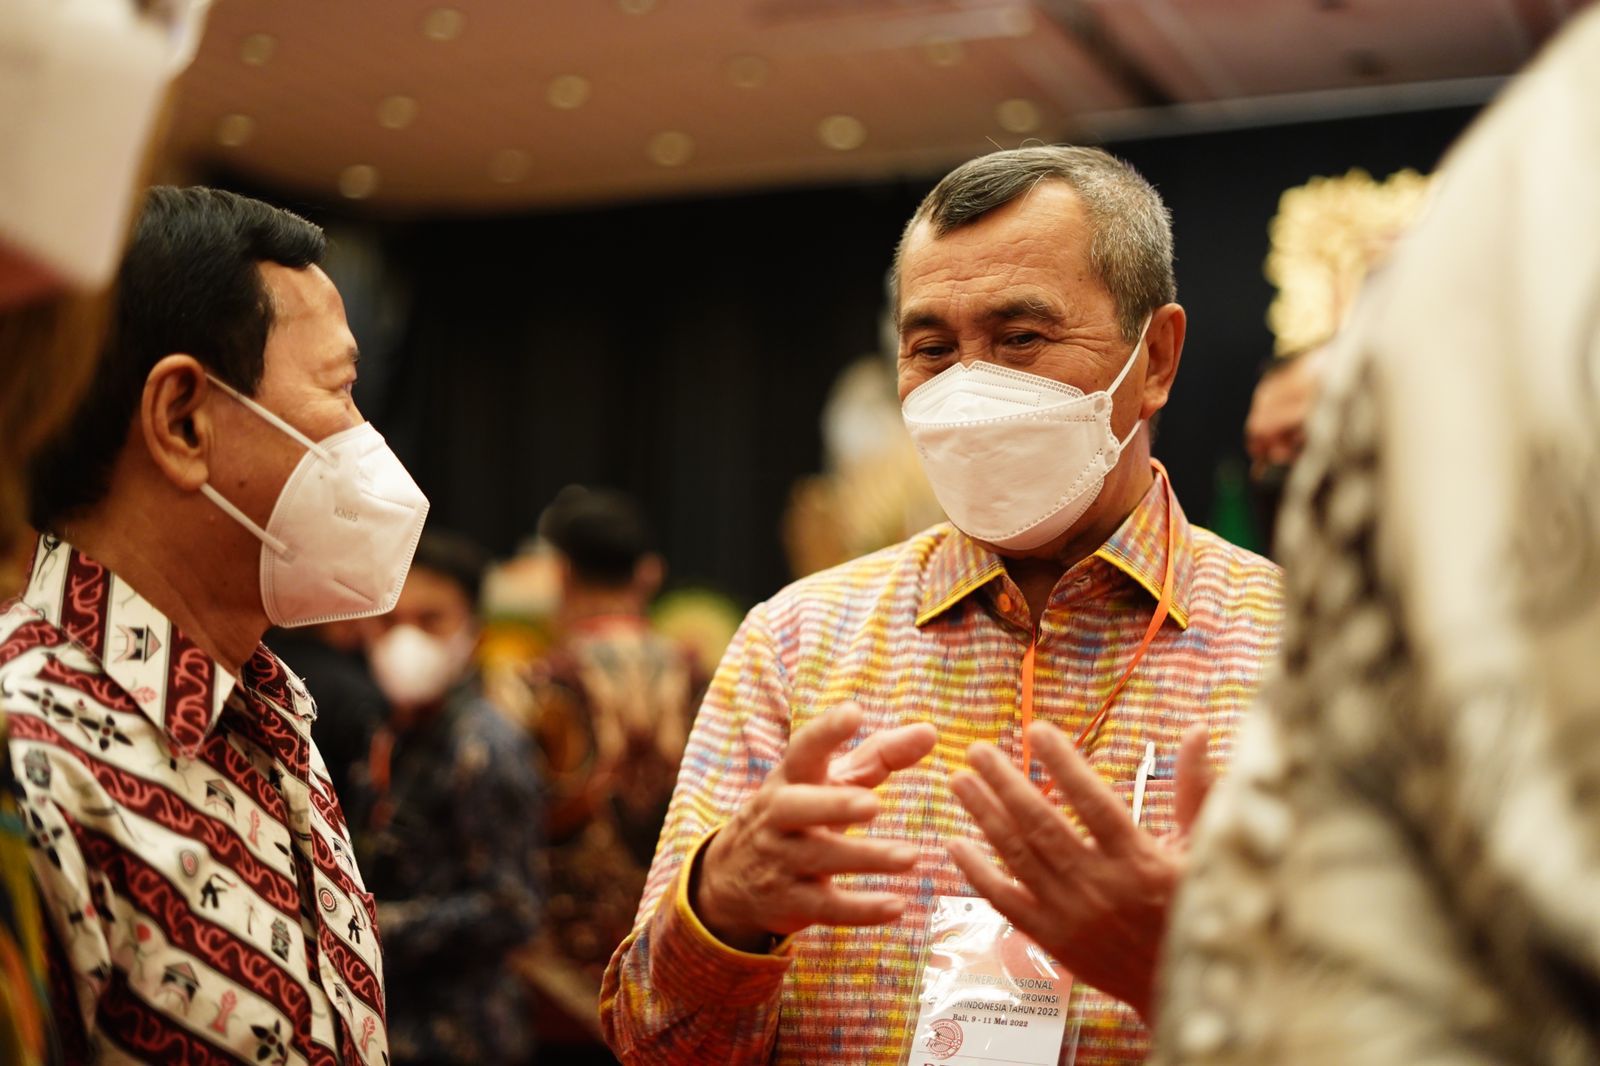 PDRB Riau Terbesar ke-5 di Indonesia, Gubri: Alhamdulillah Investasi Terus Tumbuh